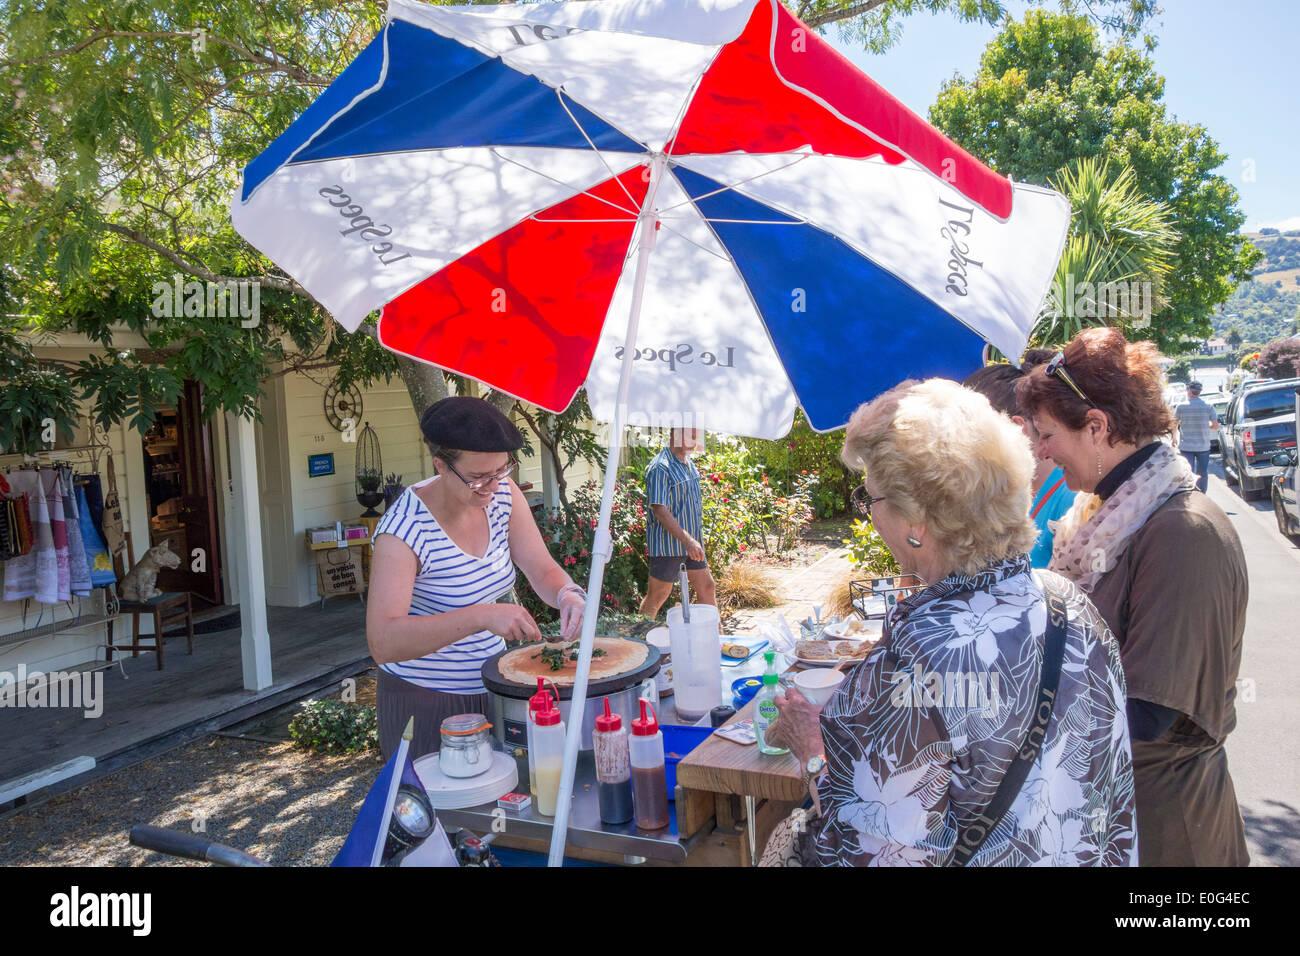 Akaroa Nueva Zelanda - Les Crêpes d'Elise haciendo panqueques crepes francesas de venta a los pasajeros de los cruceros de una cesta de alimentos en la tienda francesa La Folie Jolie Foto de stock